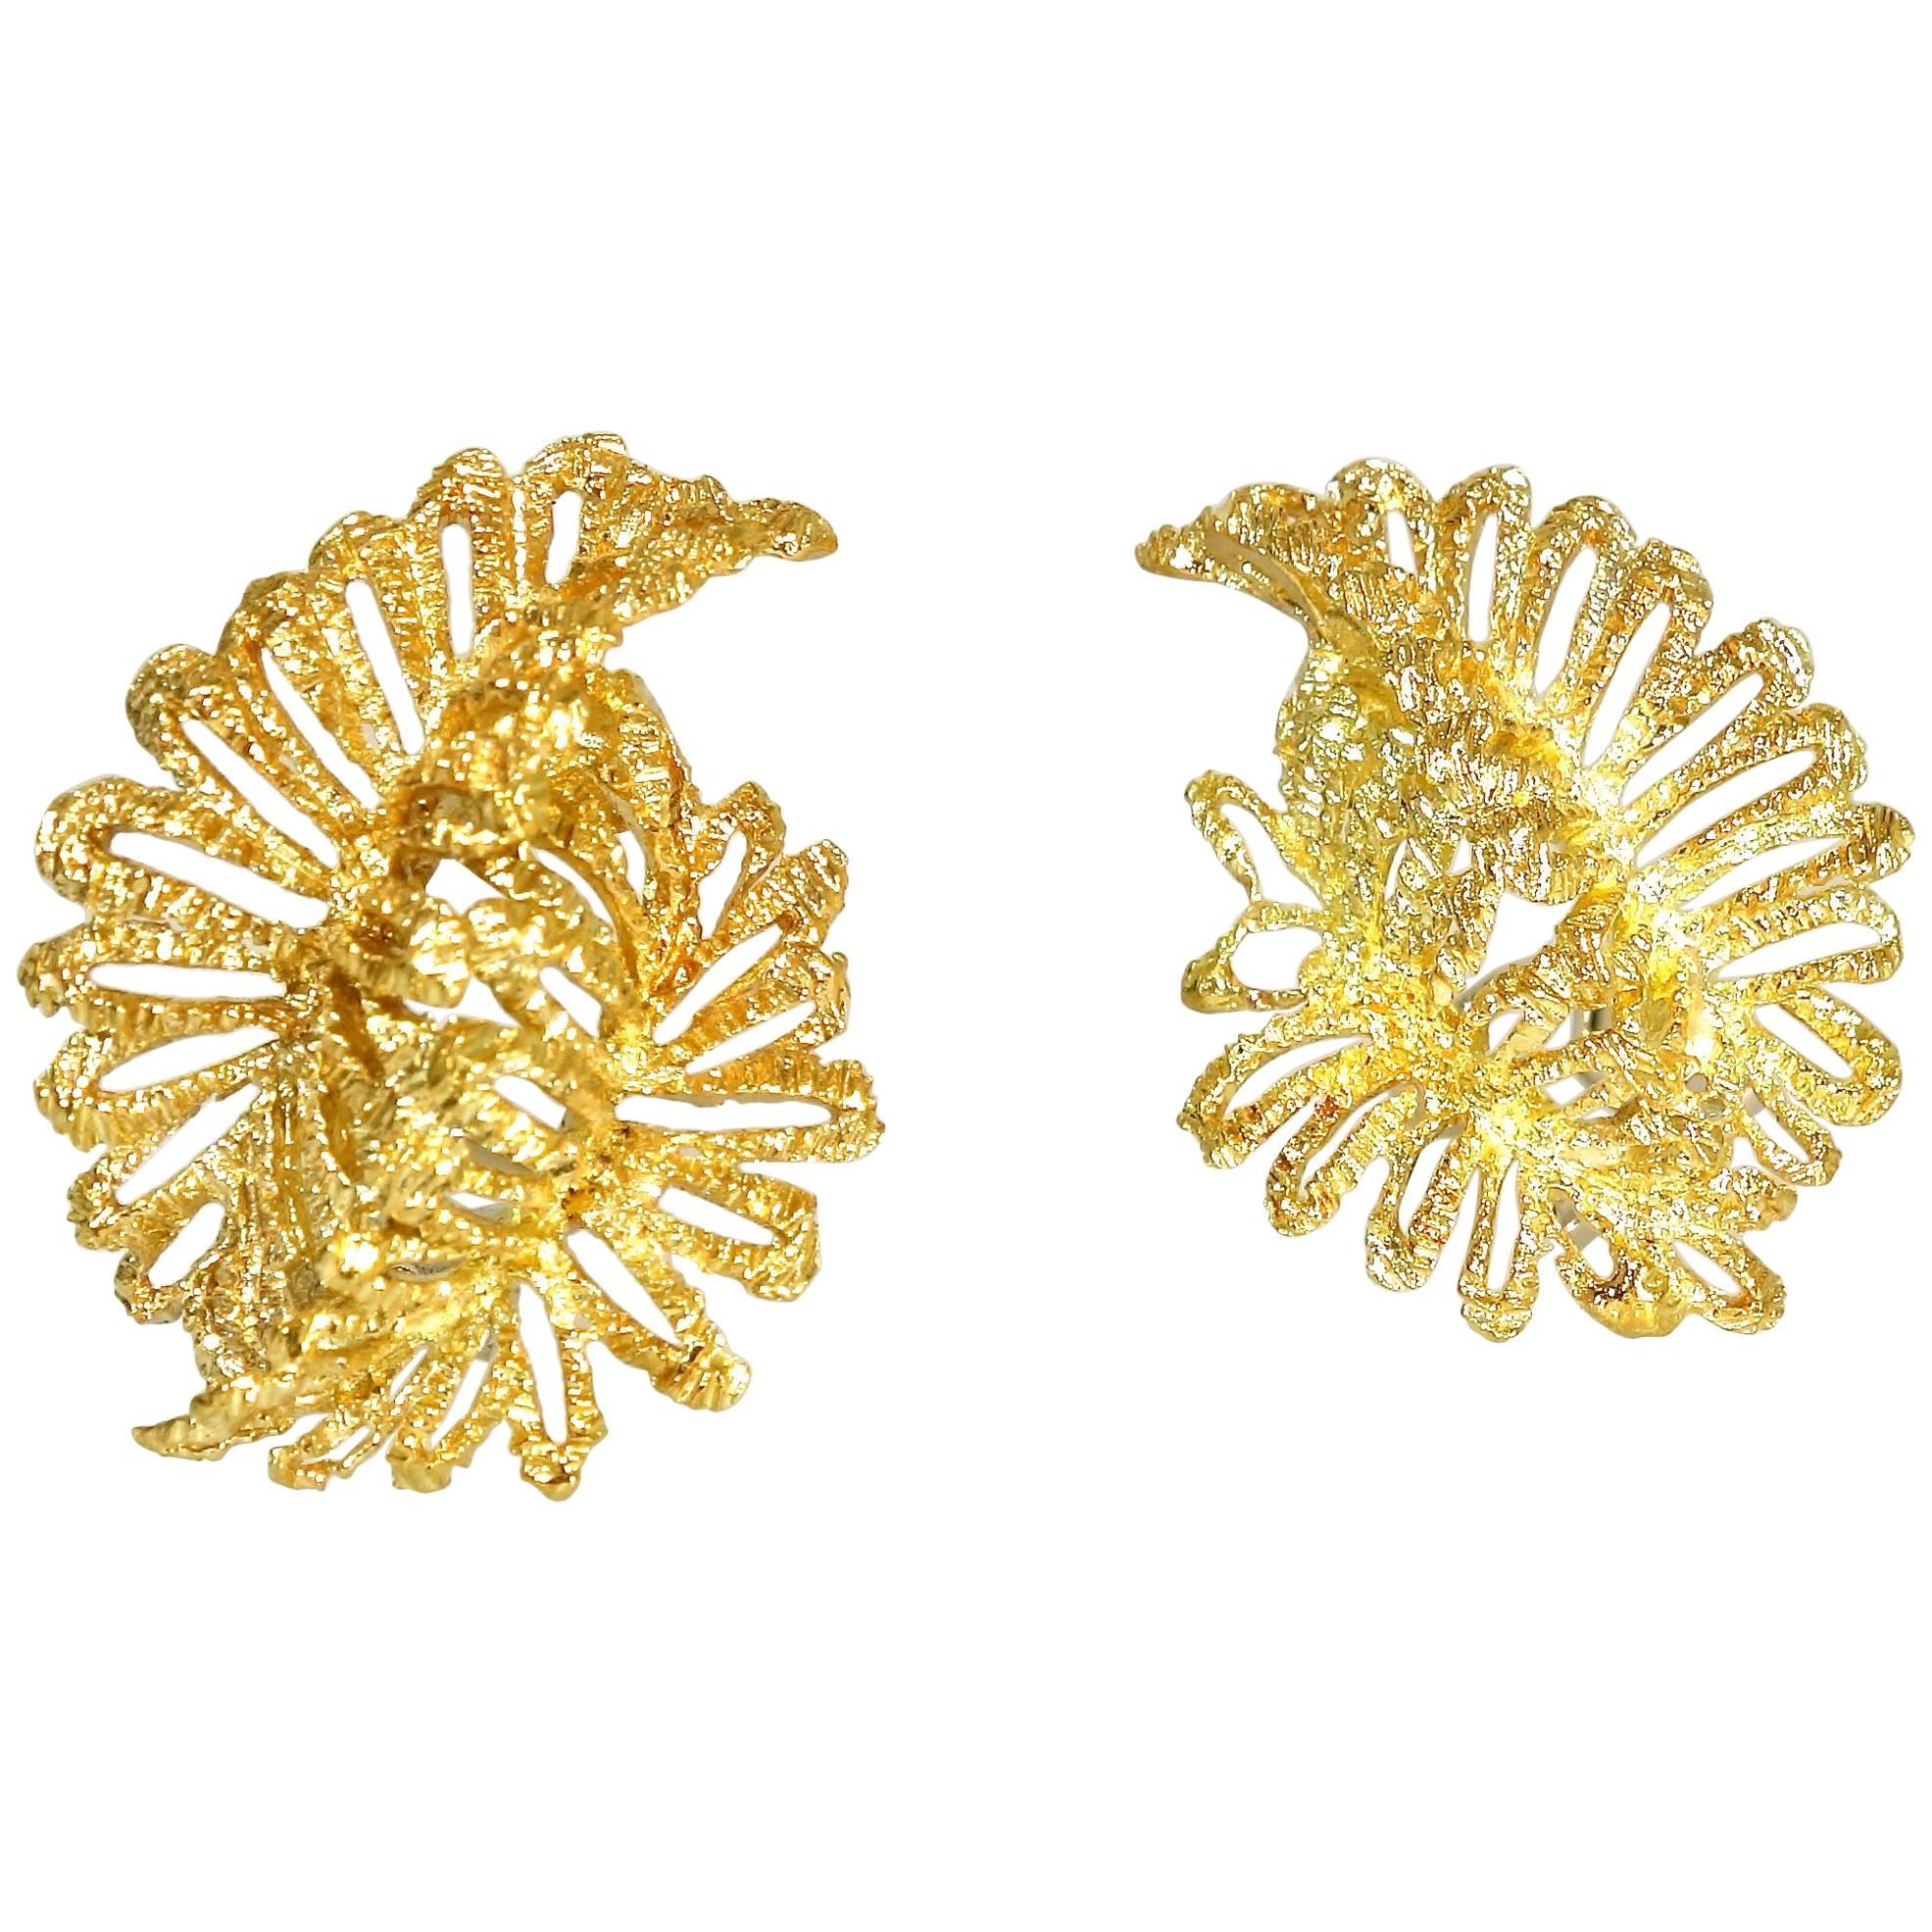 18 Karat Gold Stylized Leaf Motif Earrings